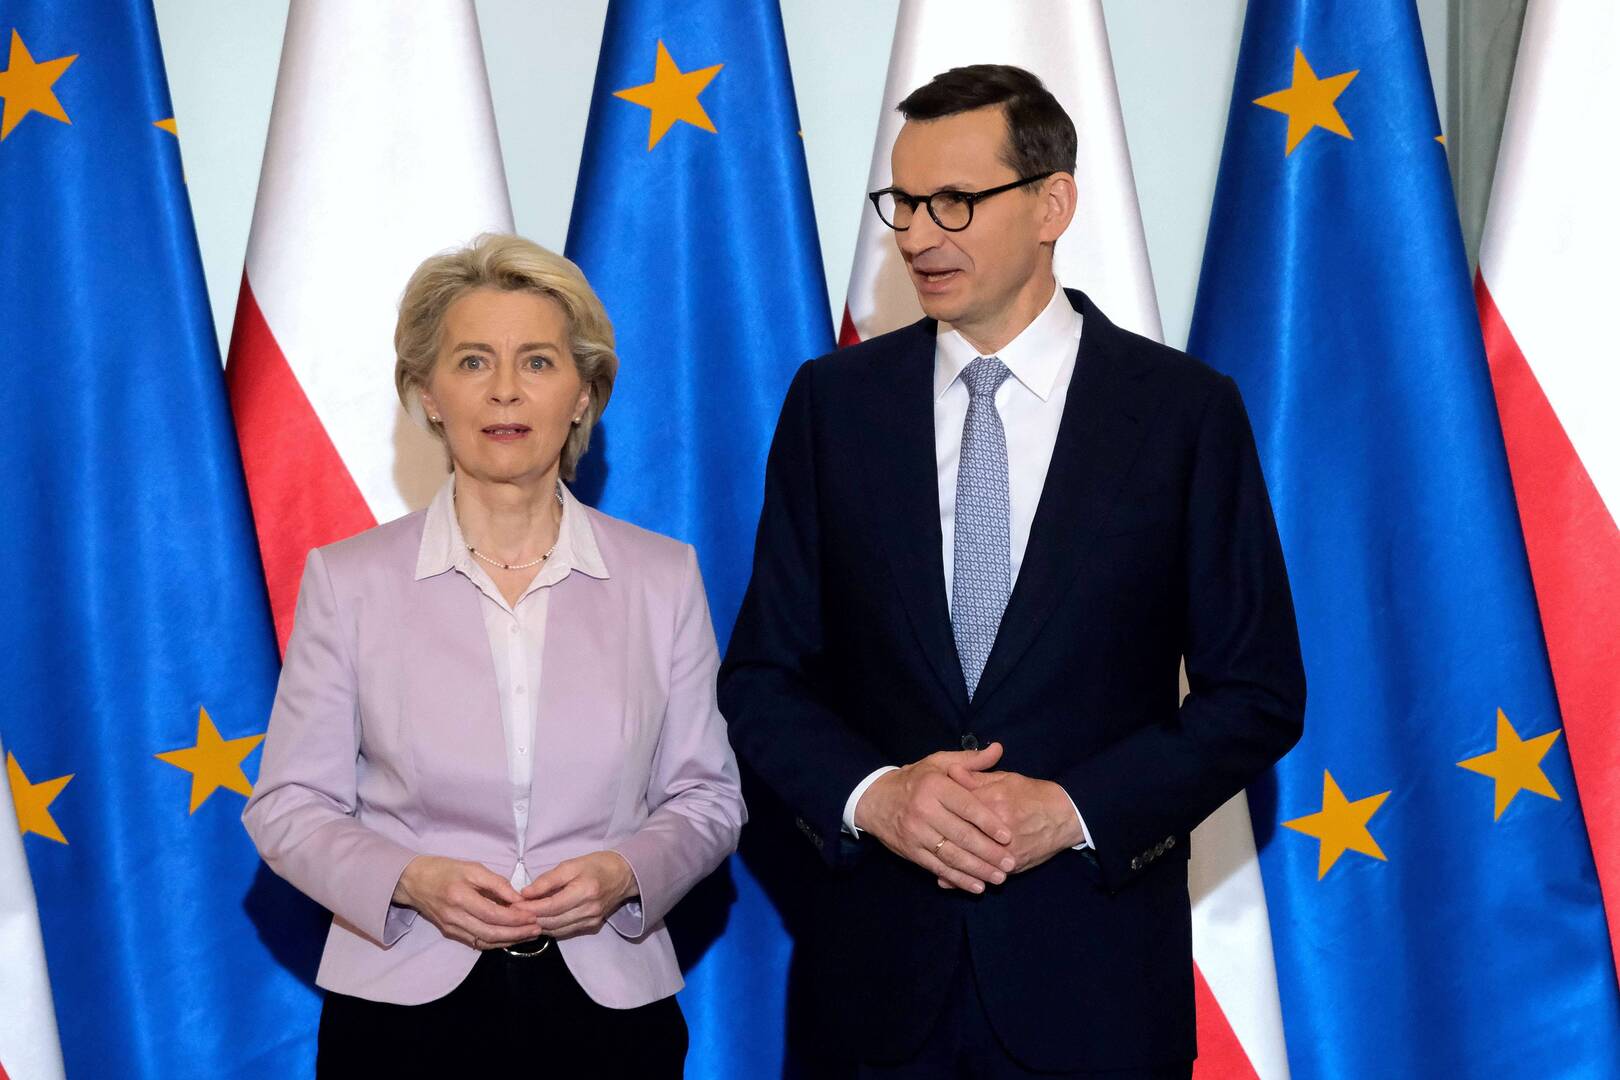 بولندا: سنحصل على مئات ملايين اليوروهات من الاتحاد الأوروبي لدعمنا أوكرانيا